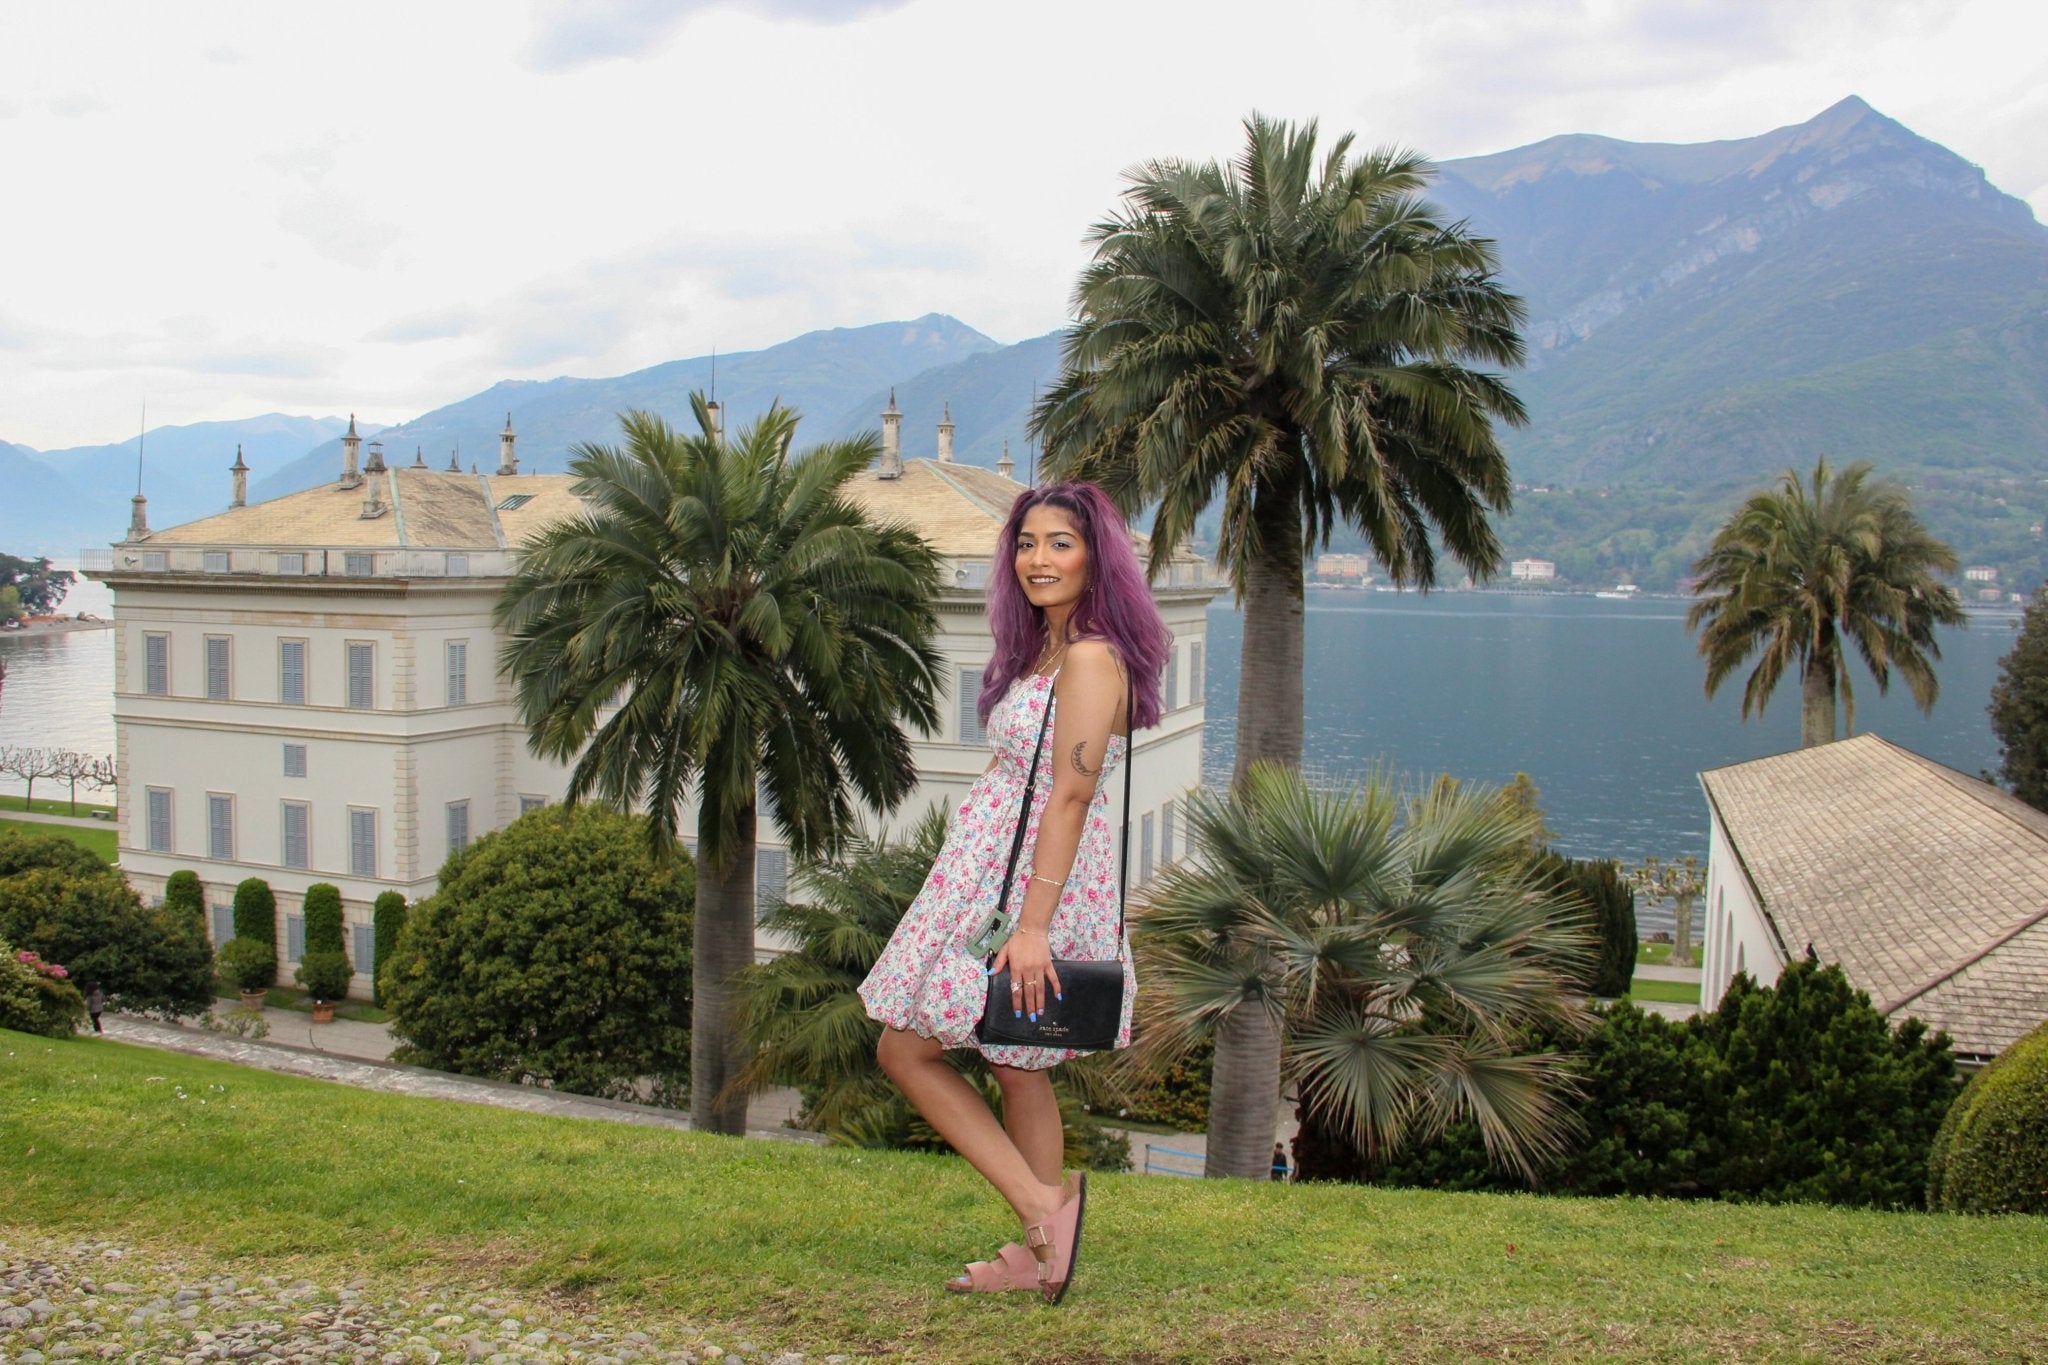 Photo Shoot at Villa Melzi Bellagio - Lake Como Photographer - FRAQAIR